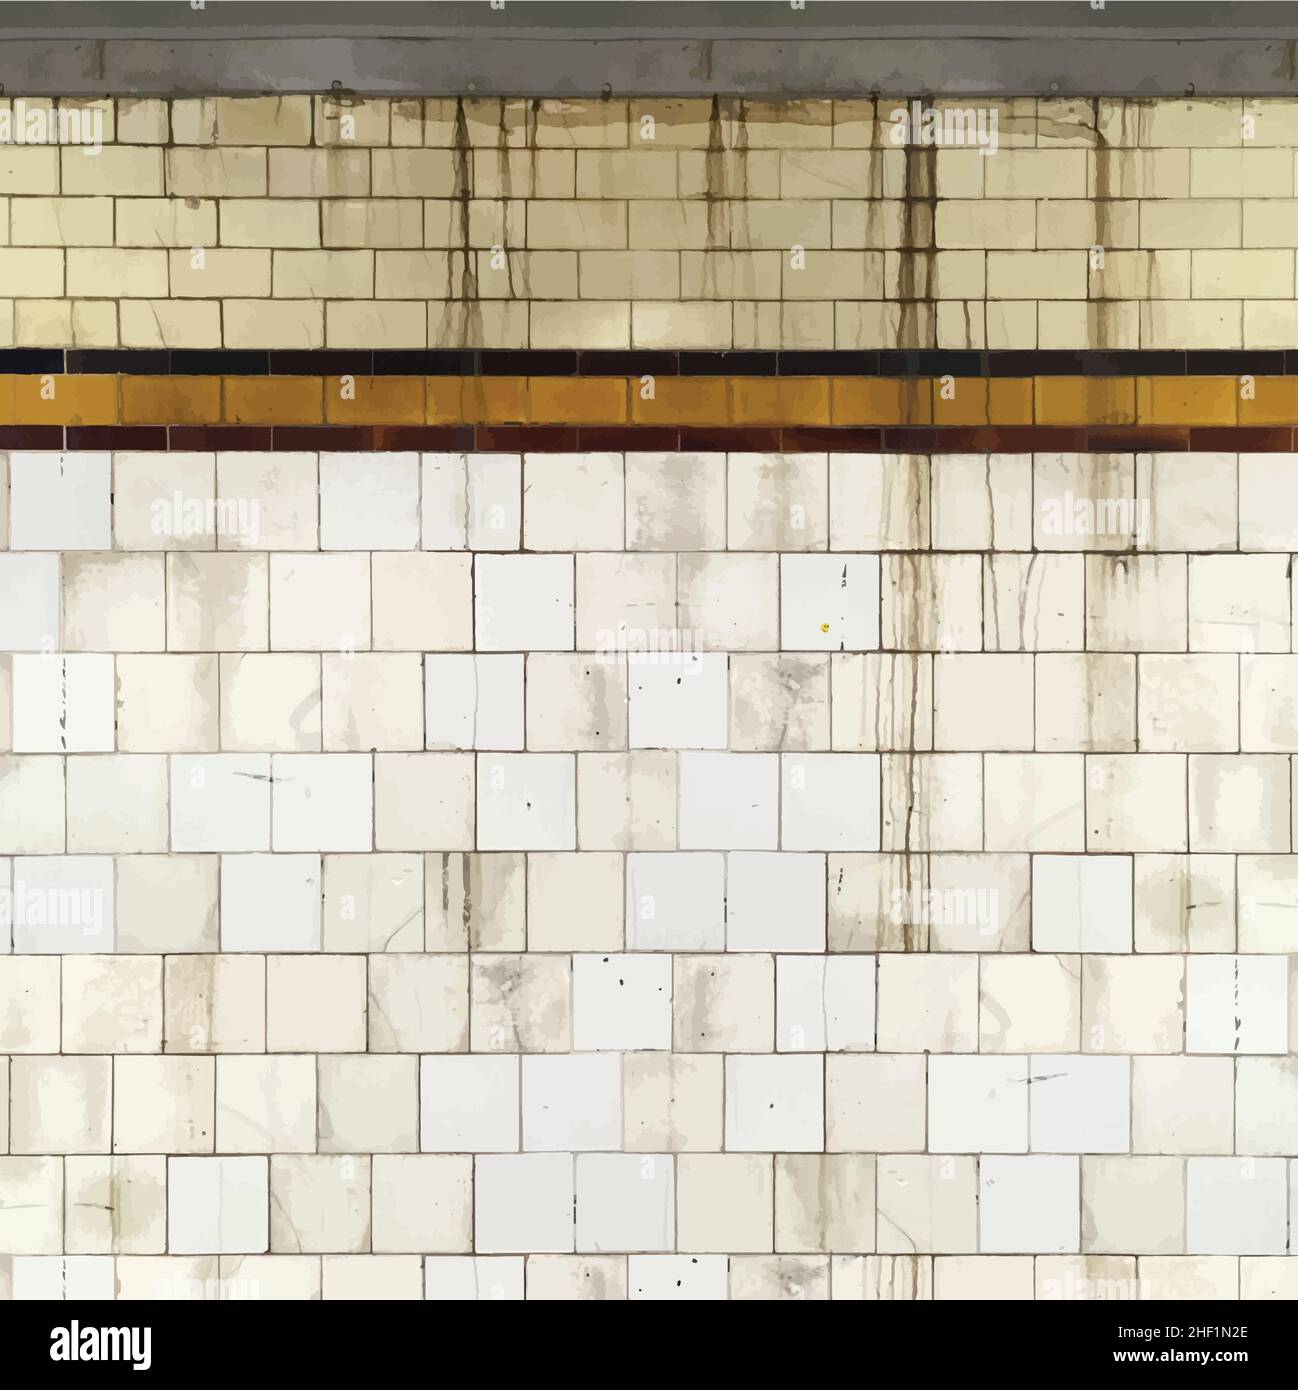 Realistische Grunge gekachelt U-Bahn Wand Hintergrund fotoreale Vektor-Illustration Stock Vektor